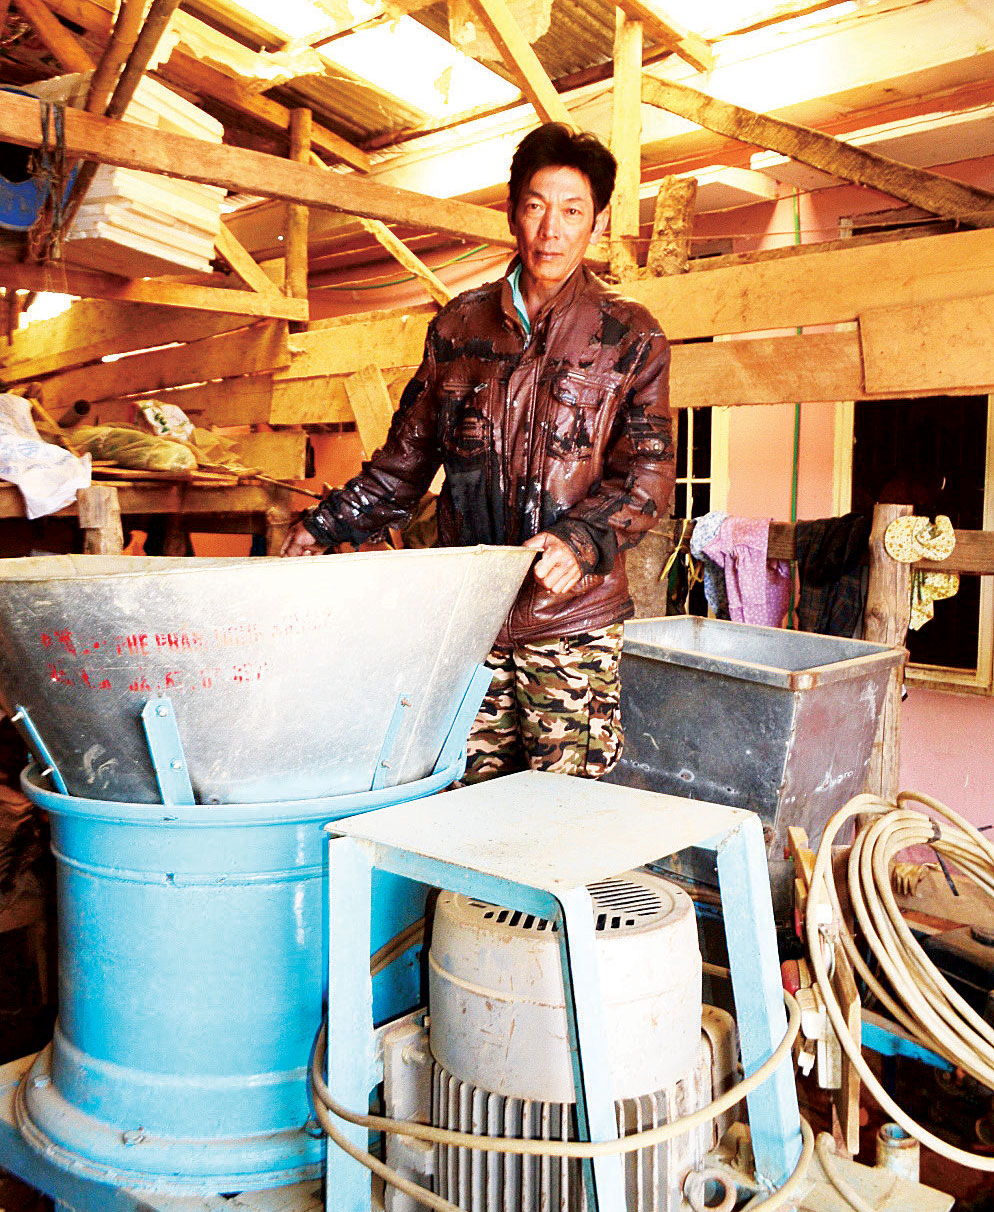 Sáng chế chiếc máy xay chế phẩm hữu cơ nông nghiệp của nông dân Vũ Đình Phúc (Đà Lạt) đã được vinh danh “Nhân tài đất Việt” năm 2014